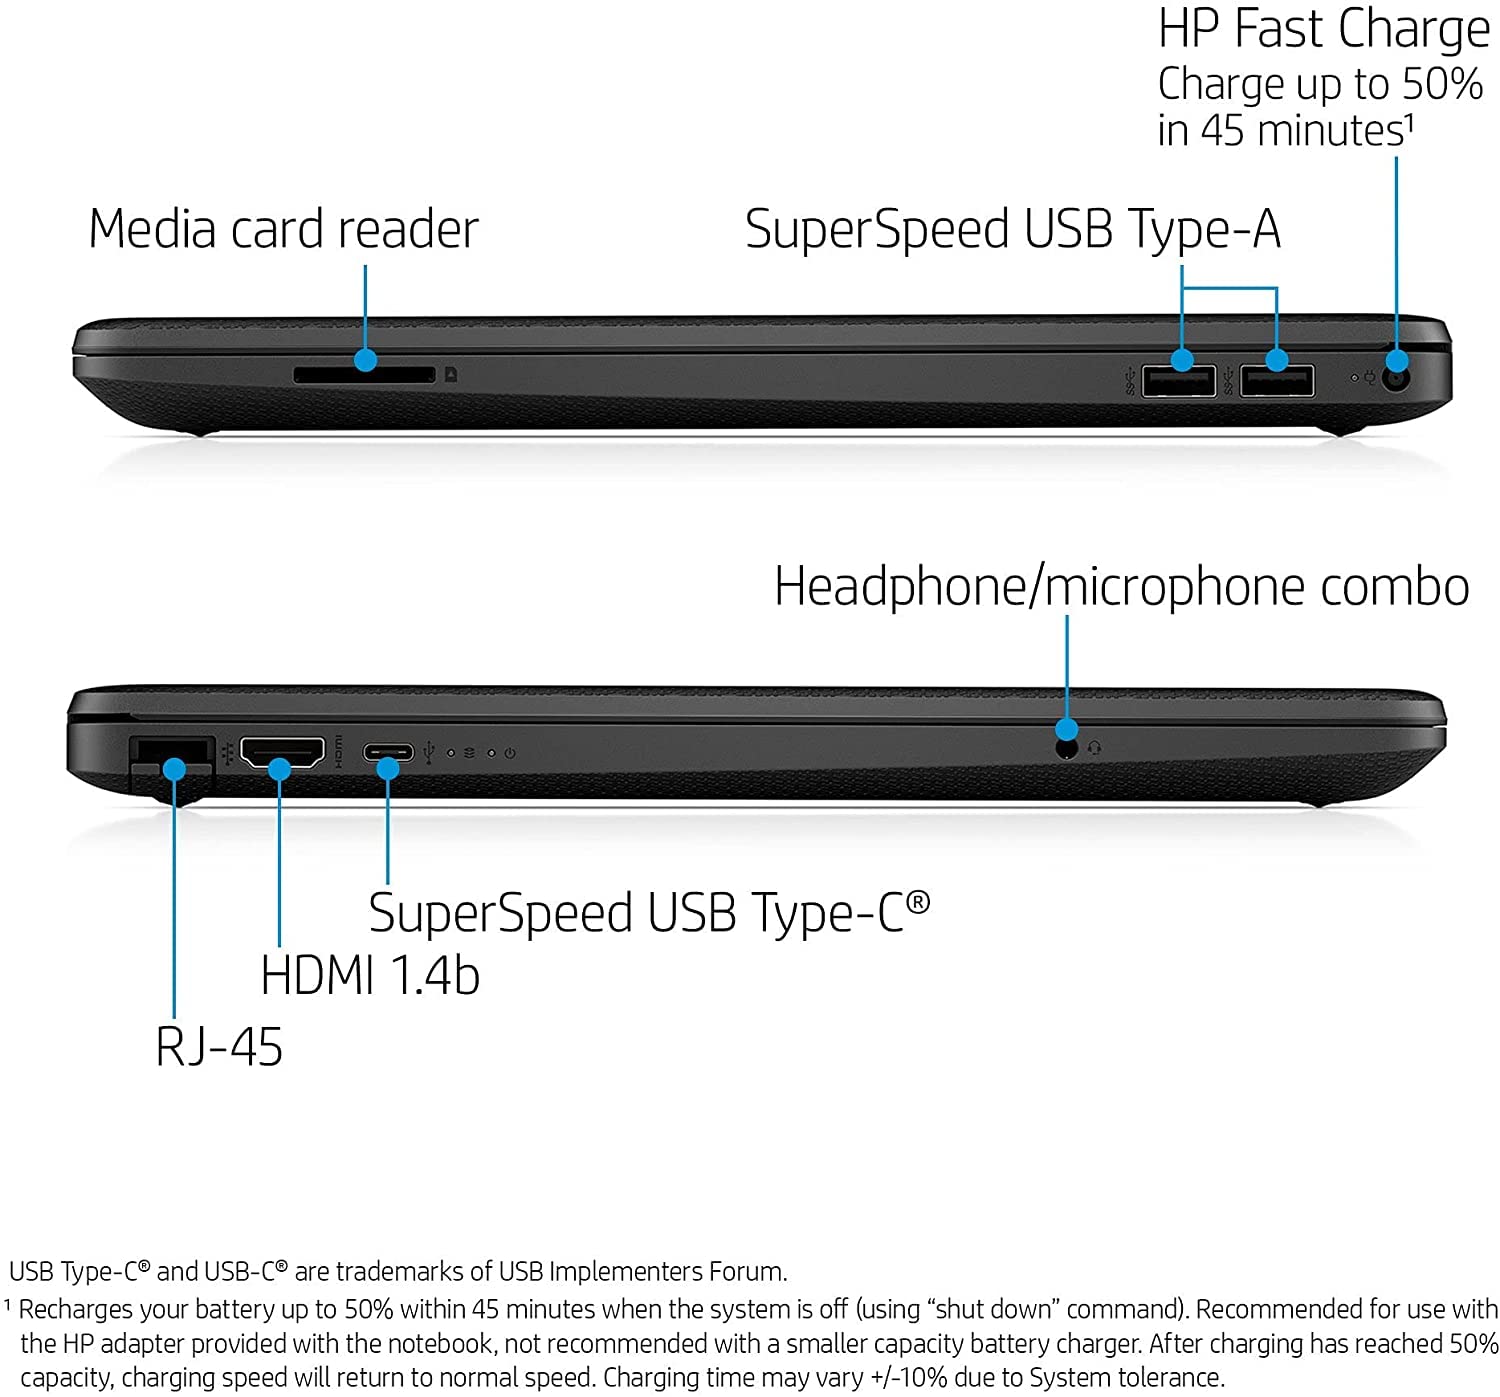 HP Newest 15 Laptop,15.6’’ FHD, Intel Celeron N4020, 4GB DDR4 RAM, 128GB SSD, Bluetooth, Webcam, WiFi, Black,Windows 10 Home